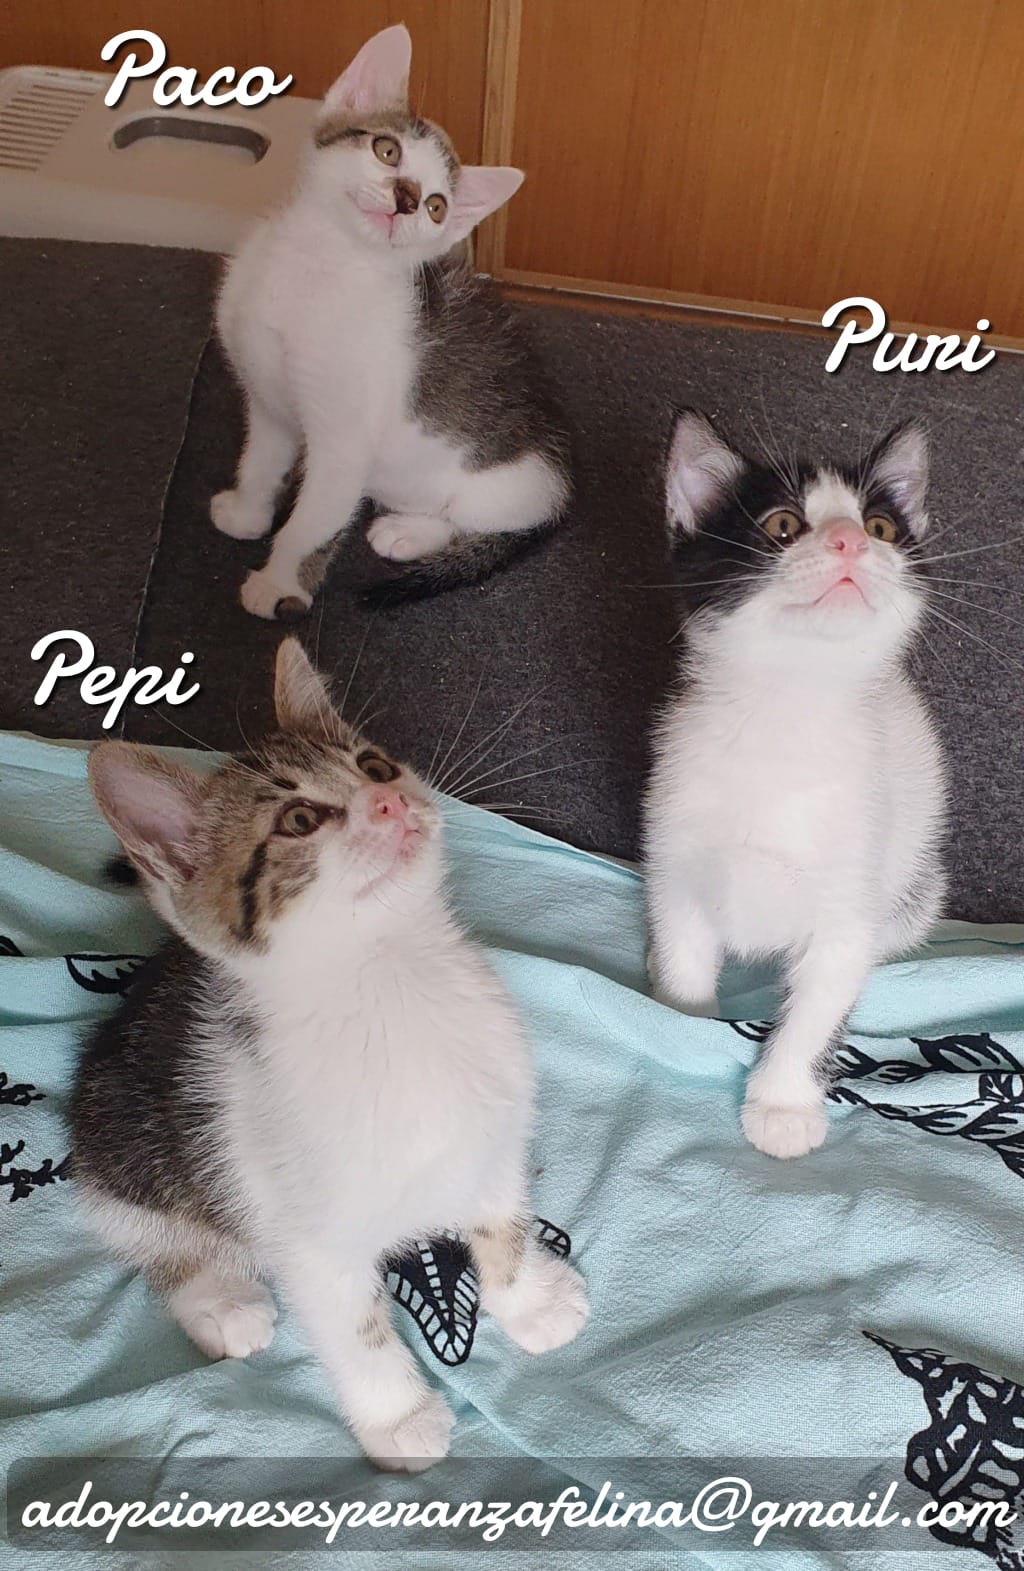 Paco, Puri y Pepi, hermanitos en adopción. Álava-ESP (F.N. 17/04/2021) Whats124